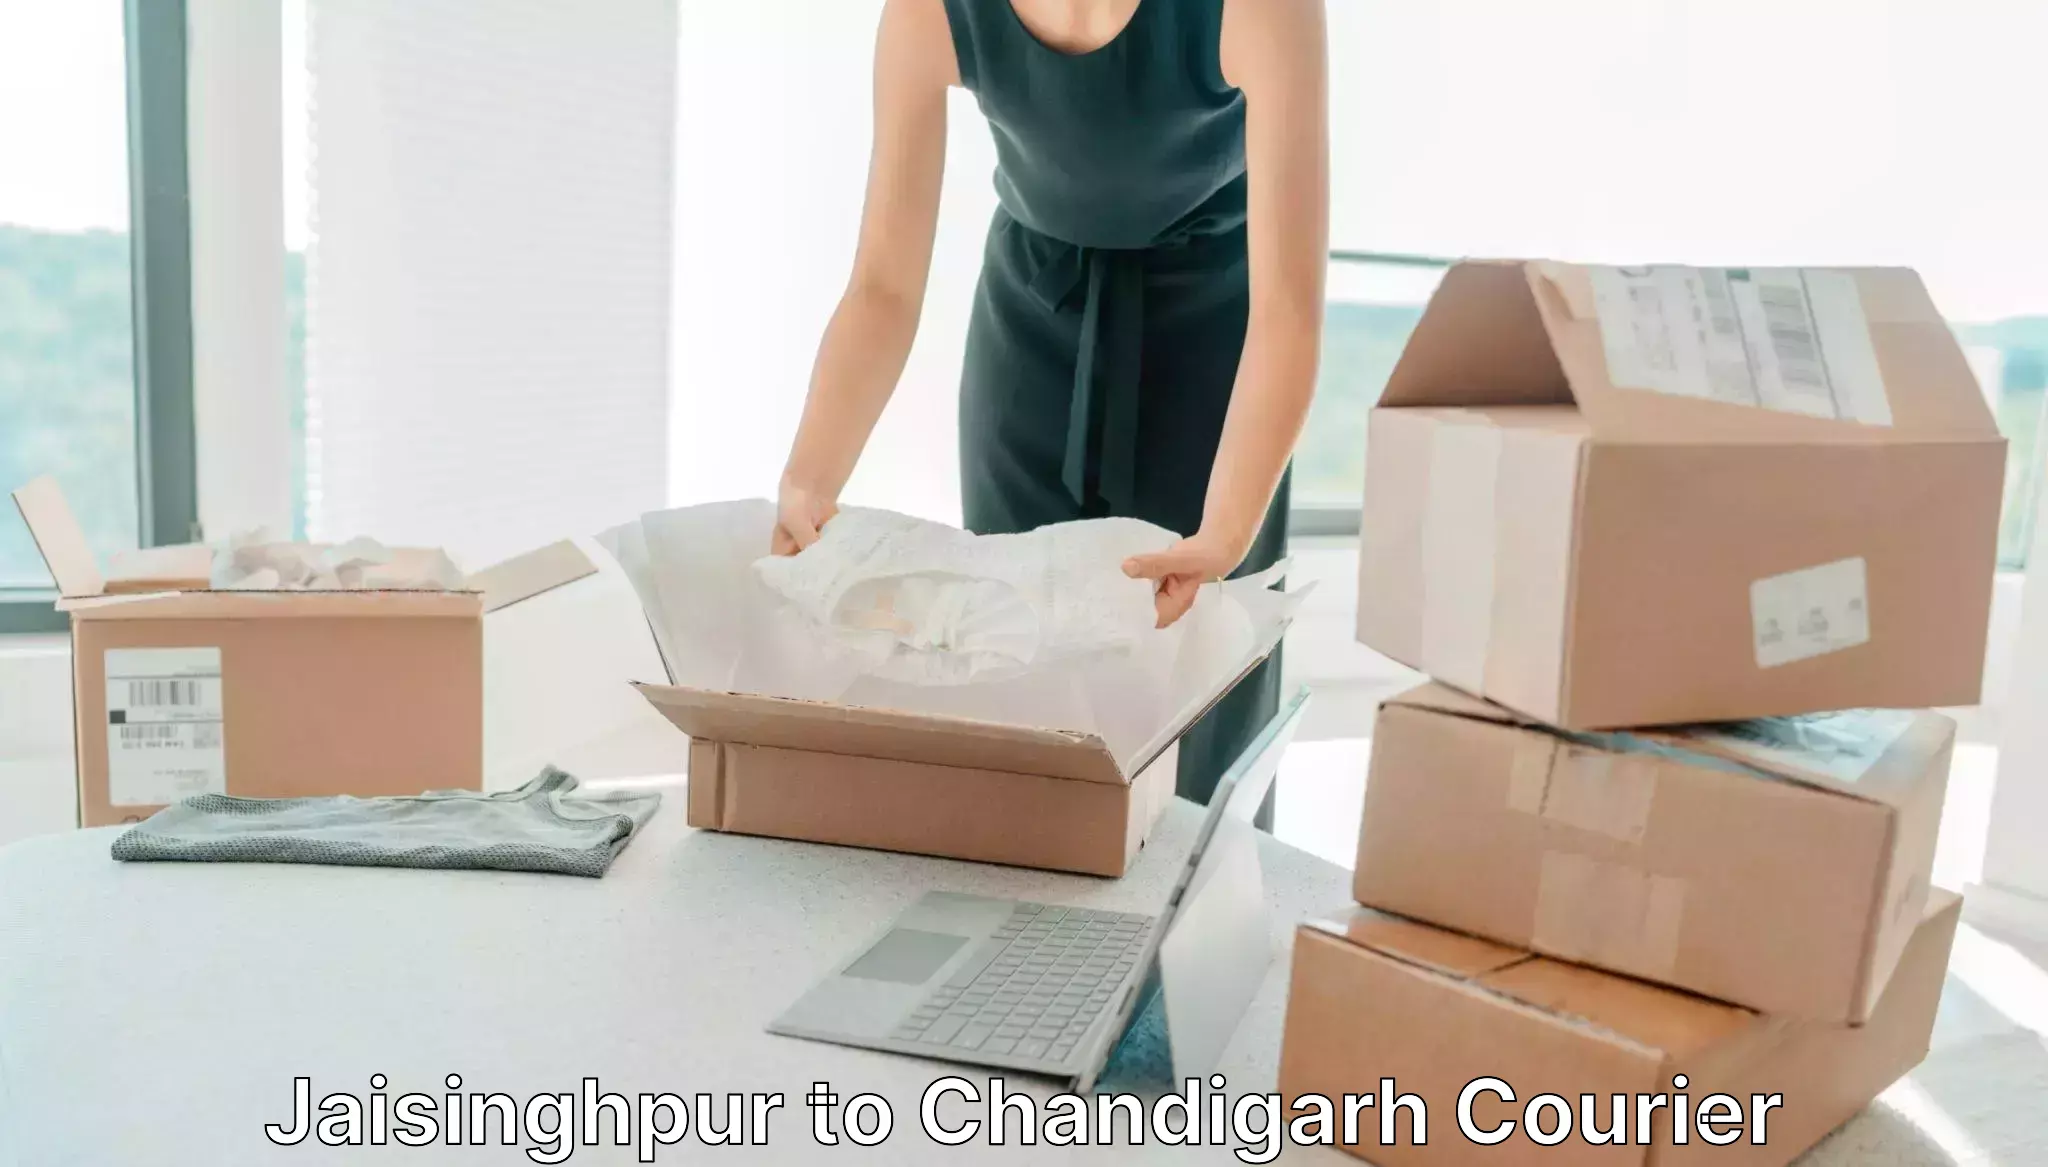 Nationwide courier service Jaisinghpur to Chandigarh